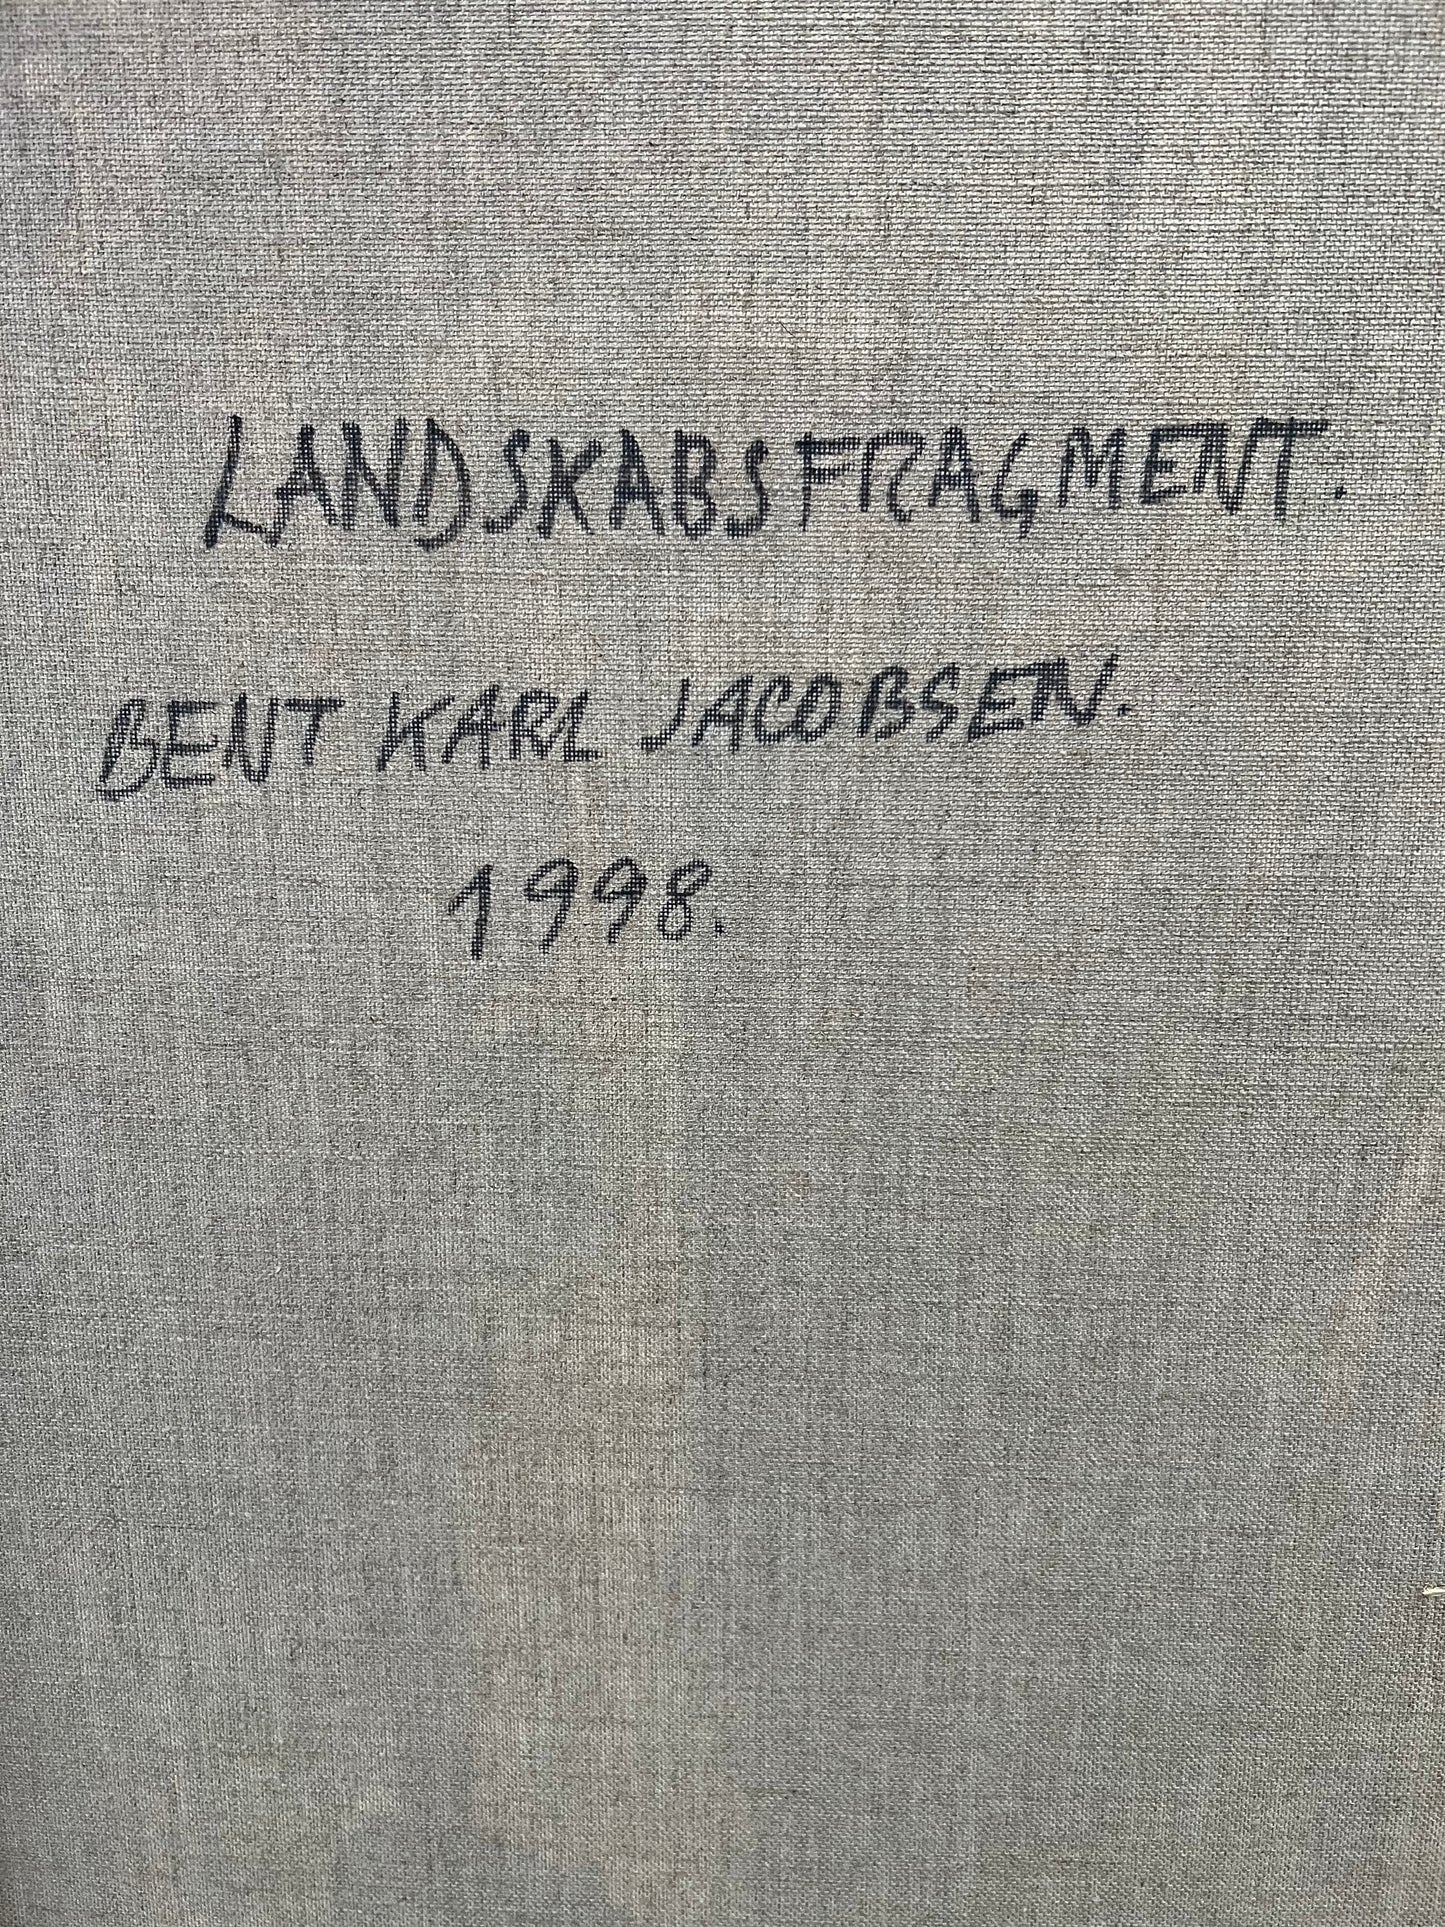 Bent Karl Jacobsen. "Landscape fragment", 1998